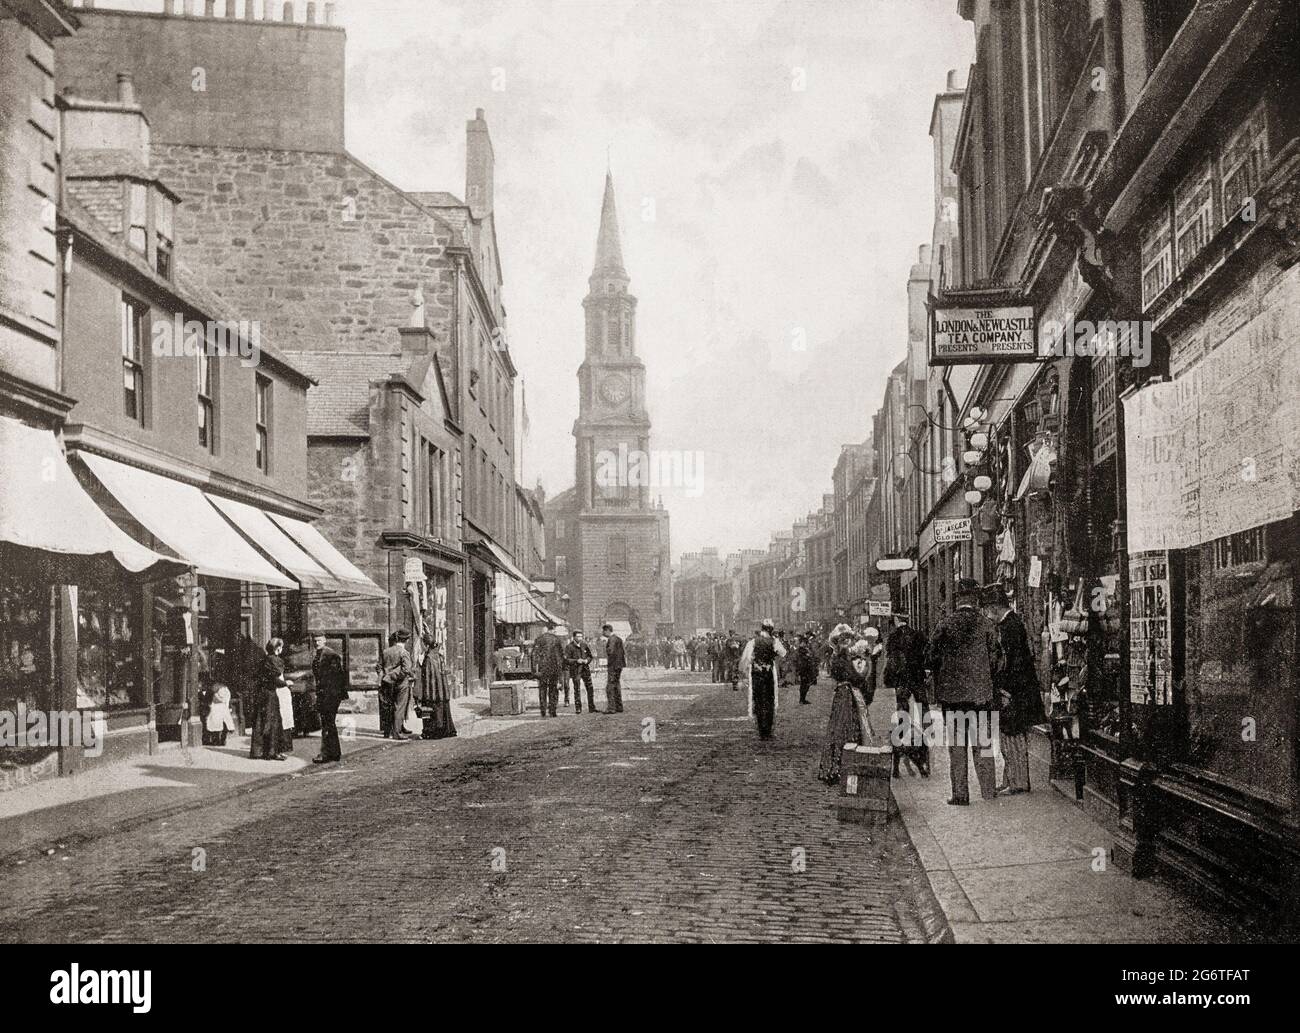 Eine Ansicht aus dem späten 19. Jahrhundert von Falkirk, einer großen Stadt in den Central Lowlands von Schottland, historisch innerhalb der Grafschaft Stirlingshire. Die geschäftige High Street mit Geschäften führt zum Falkirker Turm, der 1814 erbaut wurde und einen früheren Turm aus dem späten 17. Jahrhundert ersetzte, der selbst ein noch früheres Bauwerk ersetzte. Stockfoto